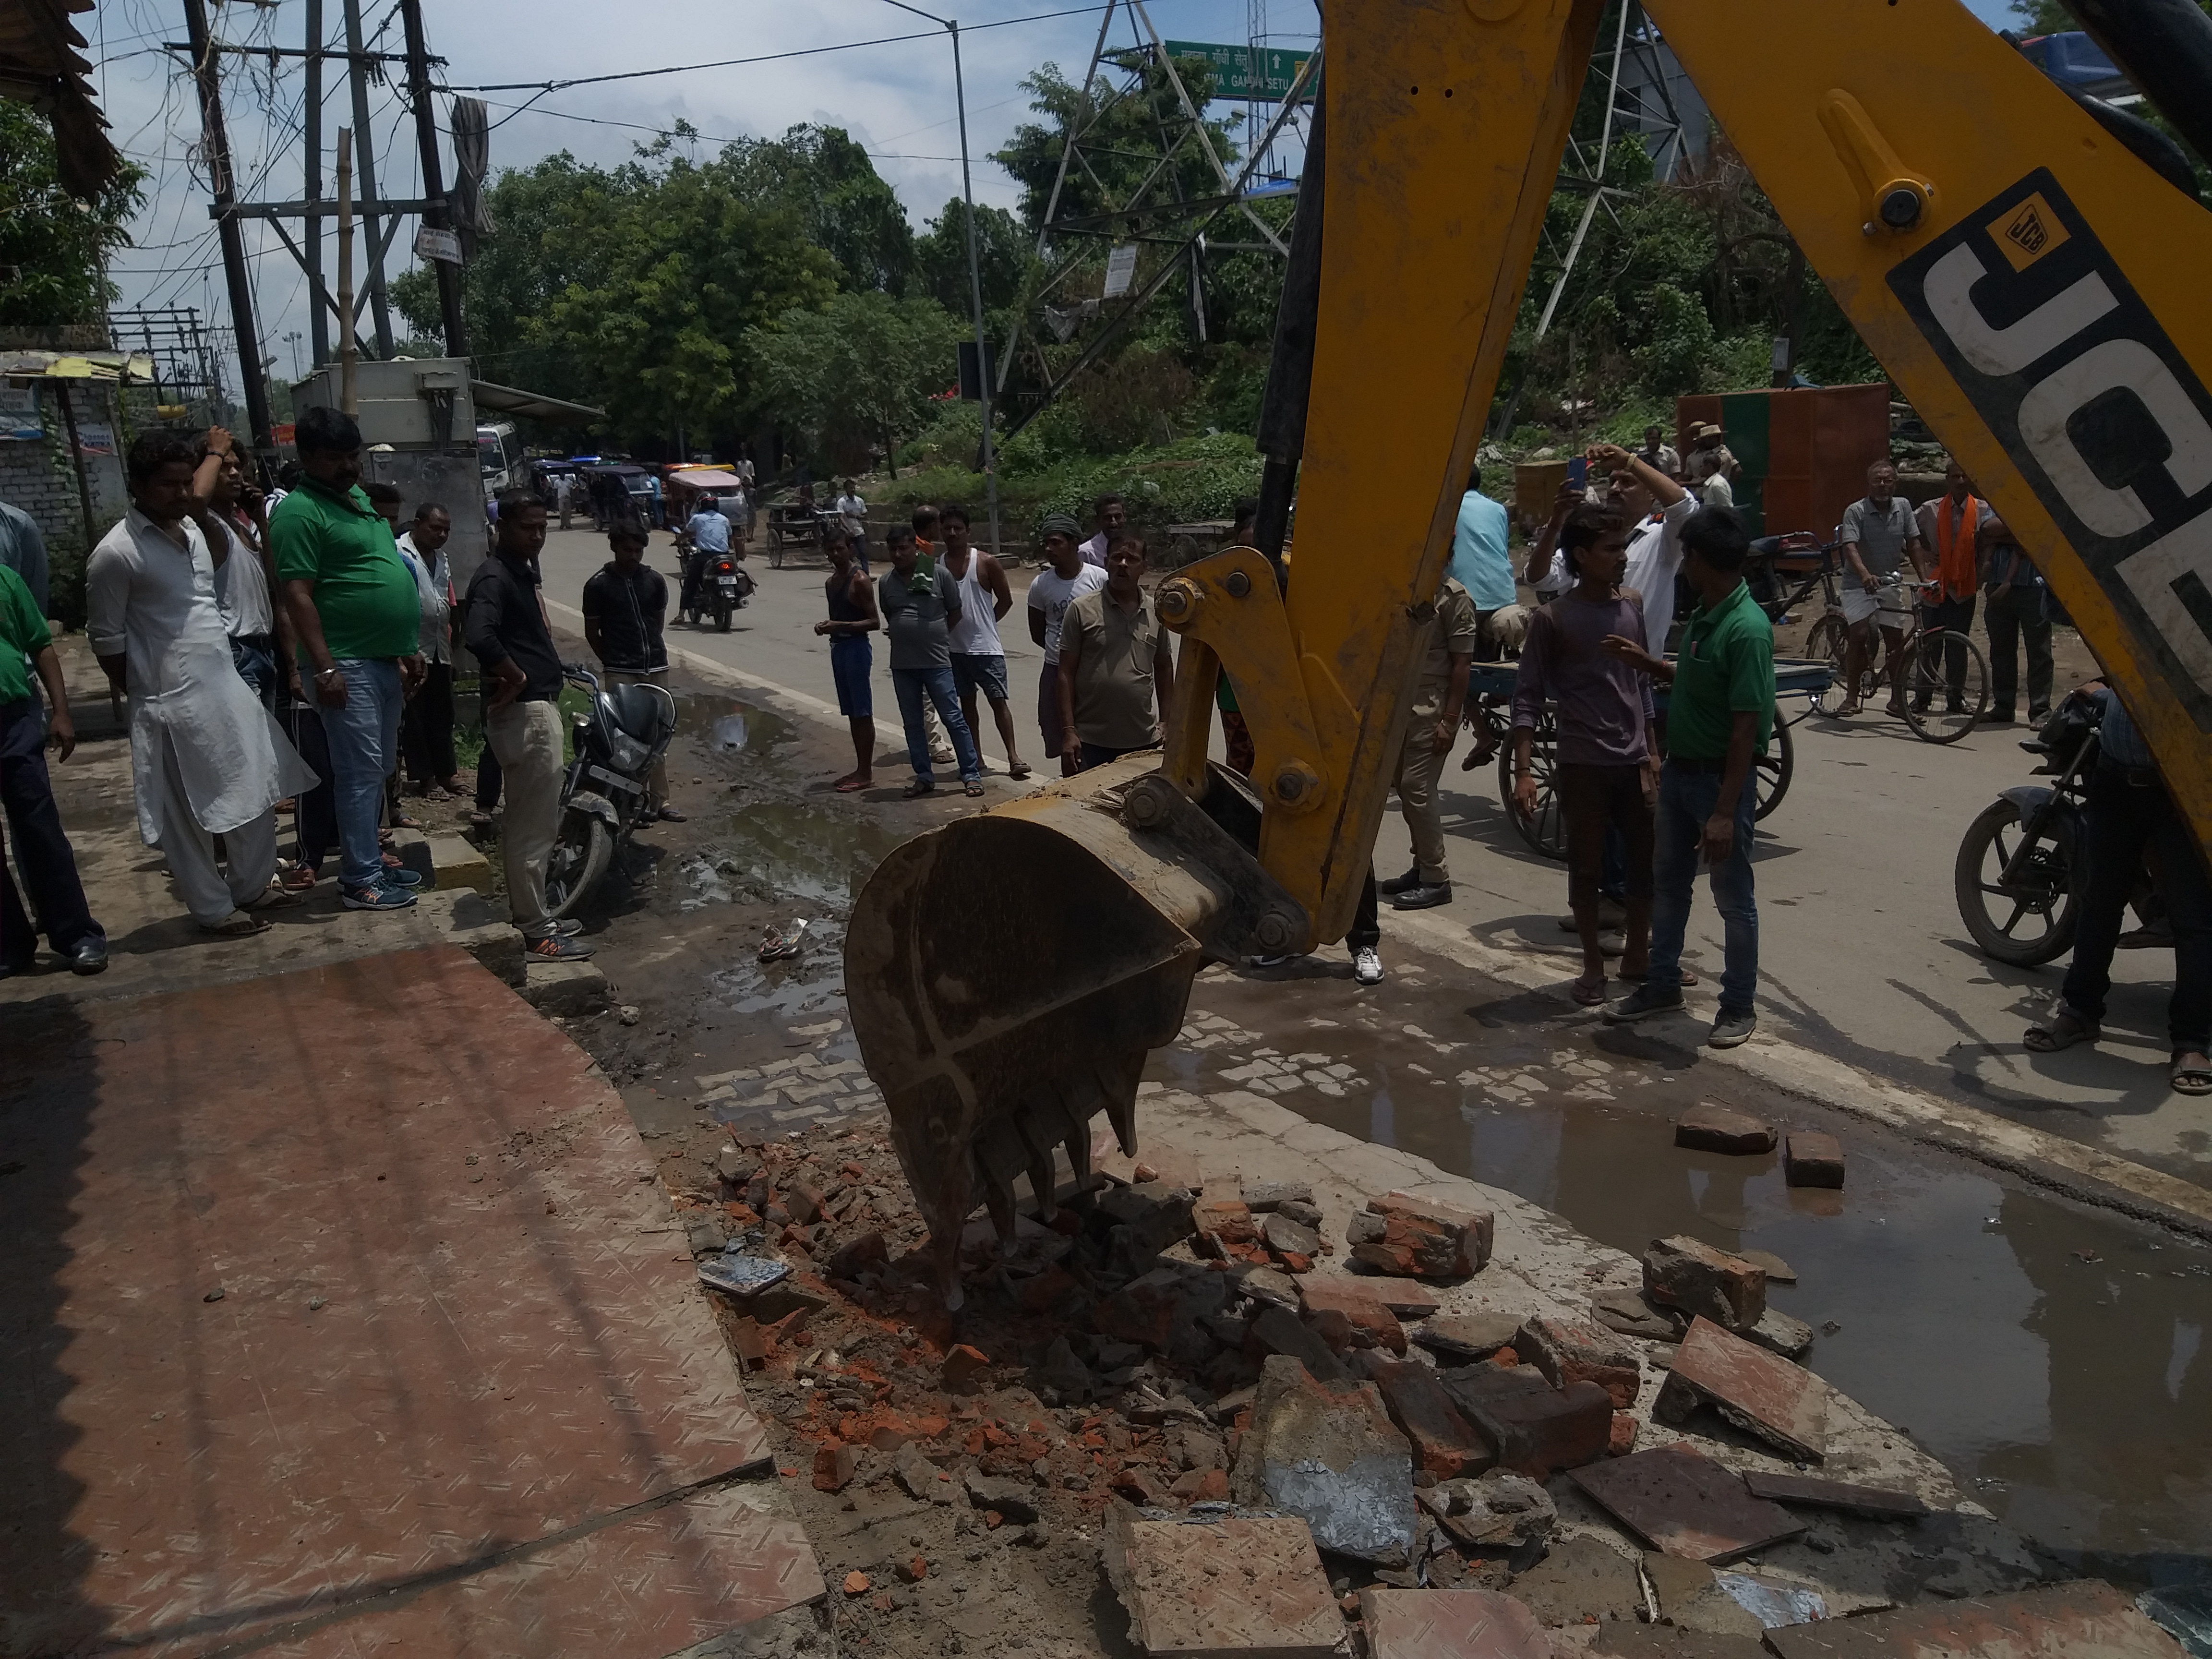 अभी-अभी-सड़क अतिक्रमणकारियों के खिलाफ चल रहा पटना नगर निगम का डंडा,तोड़े जा रहे हैं अवैध निर्माण-